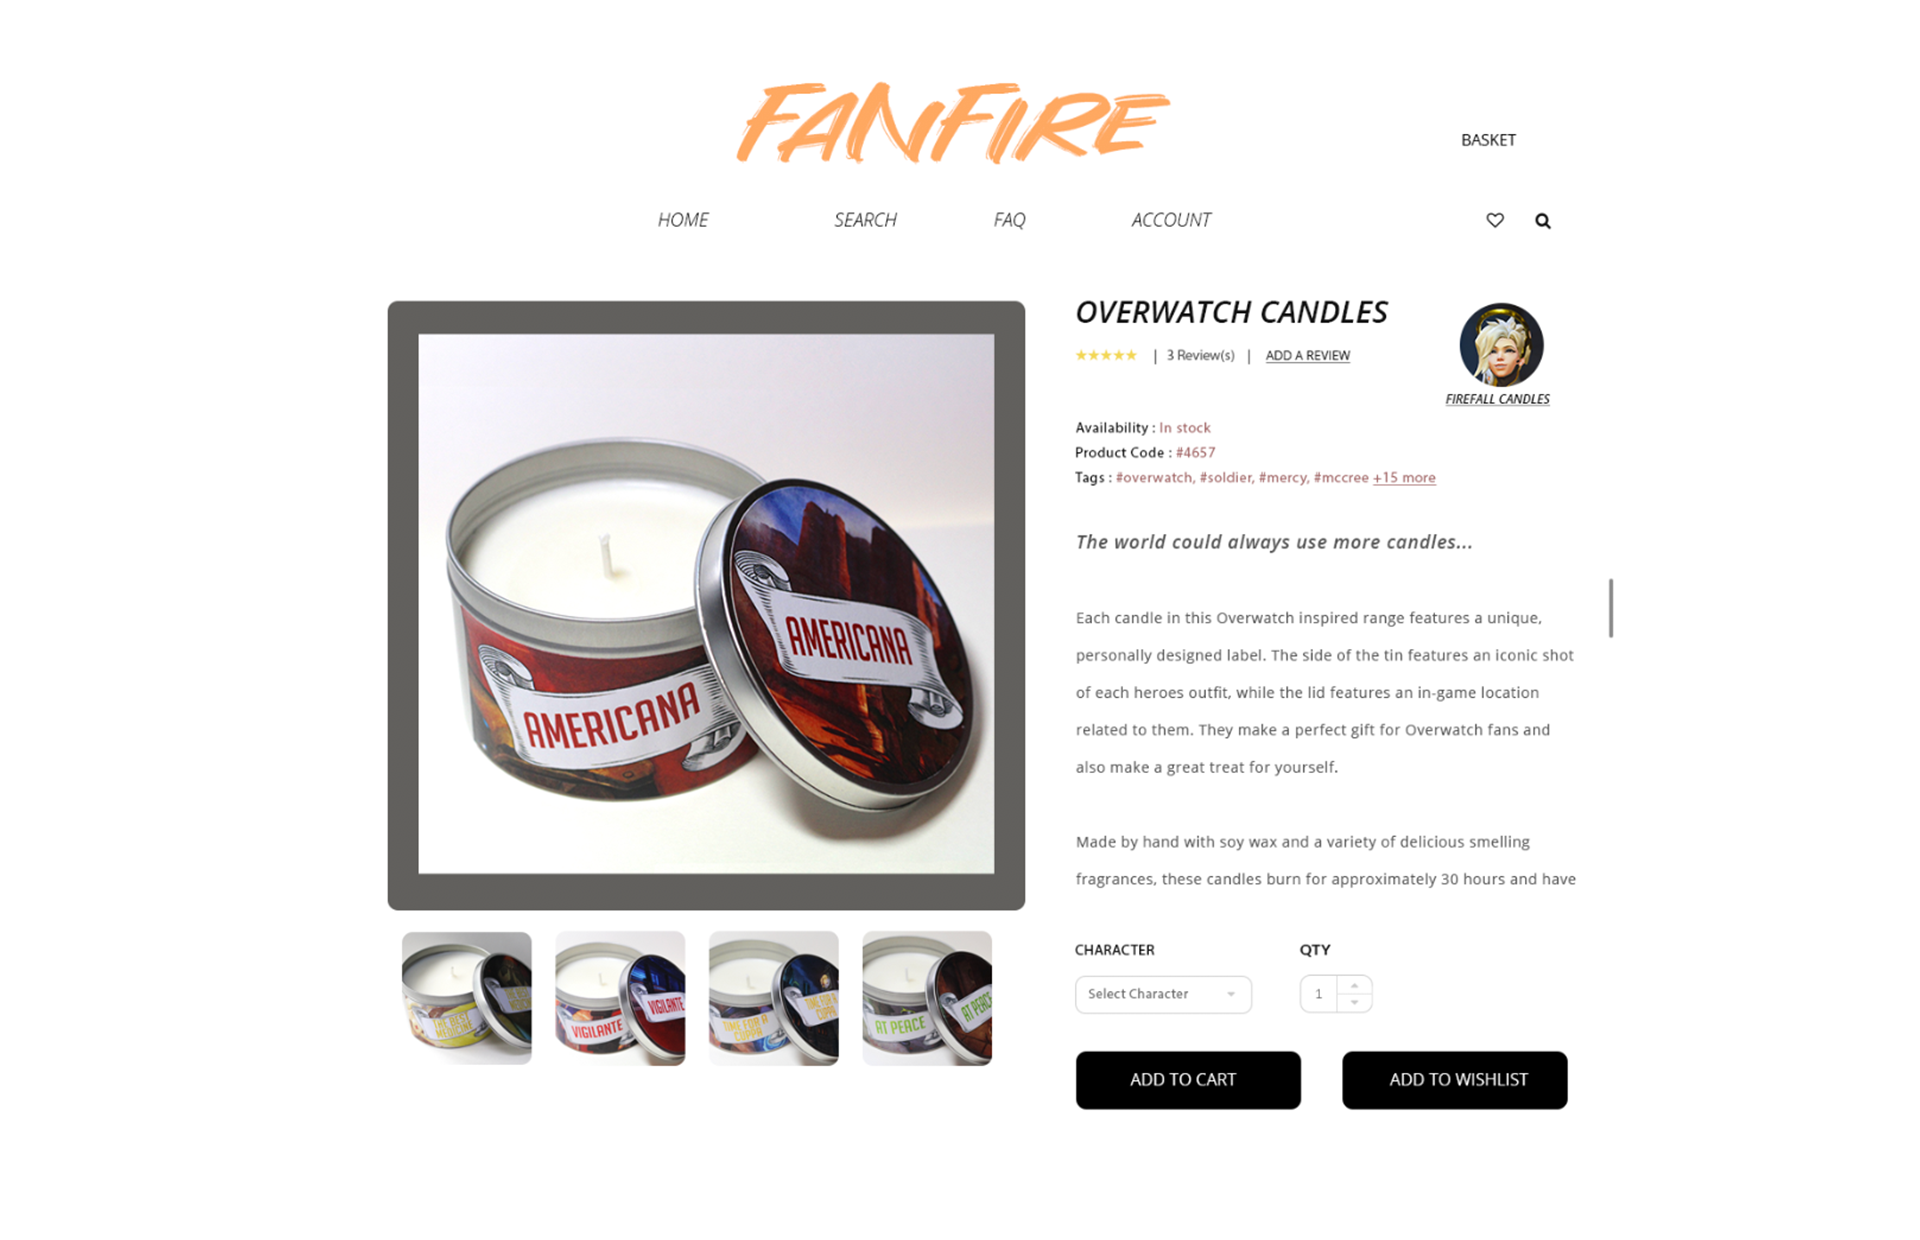 Fanfire